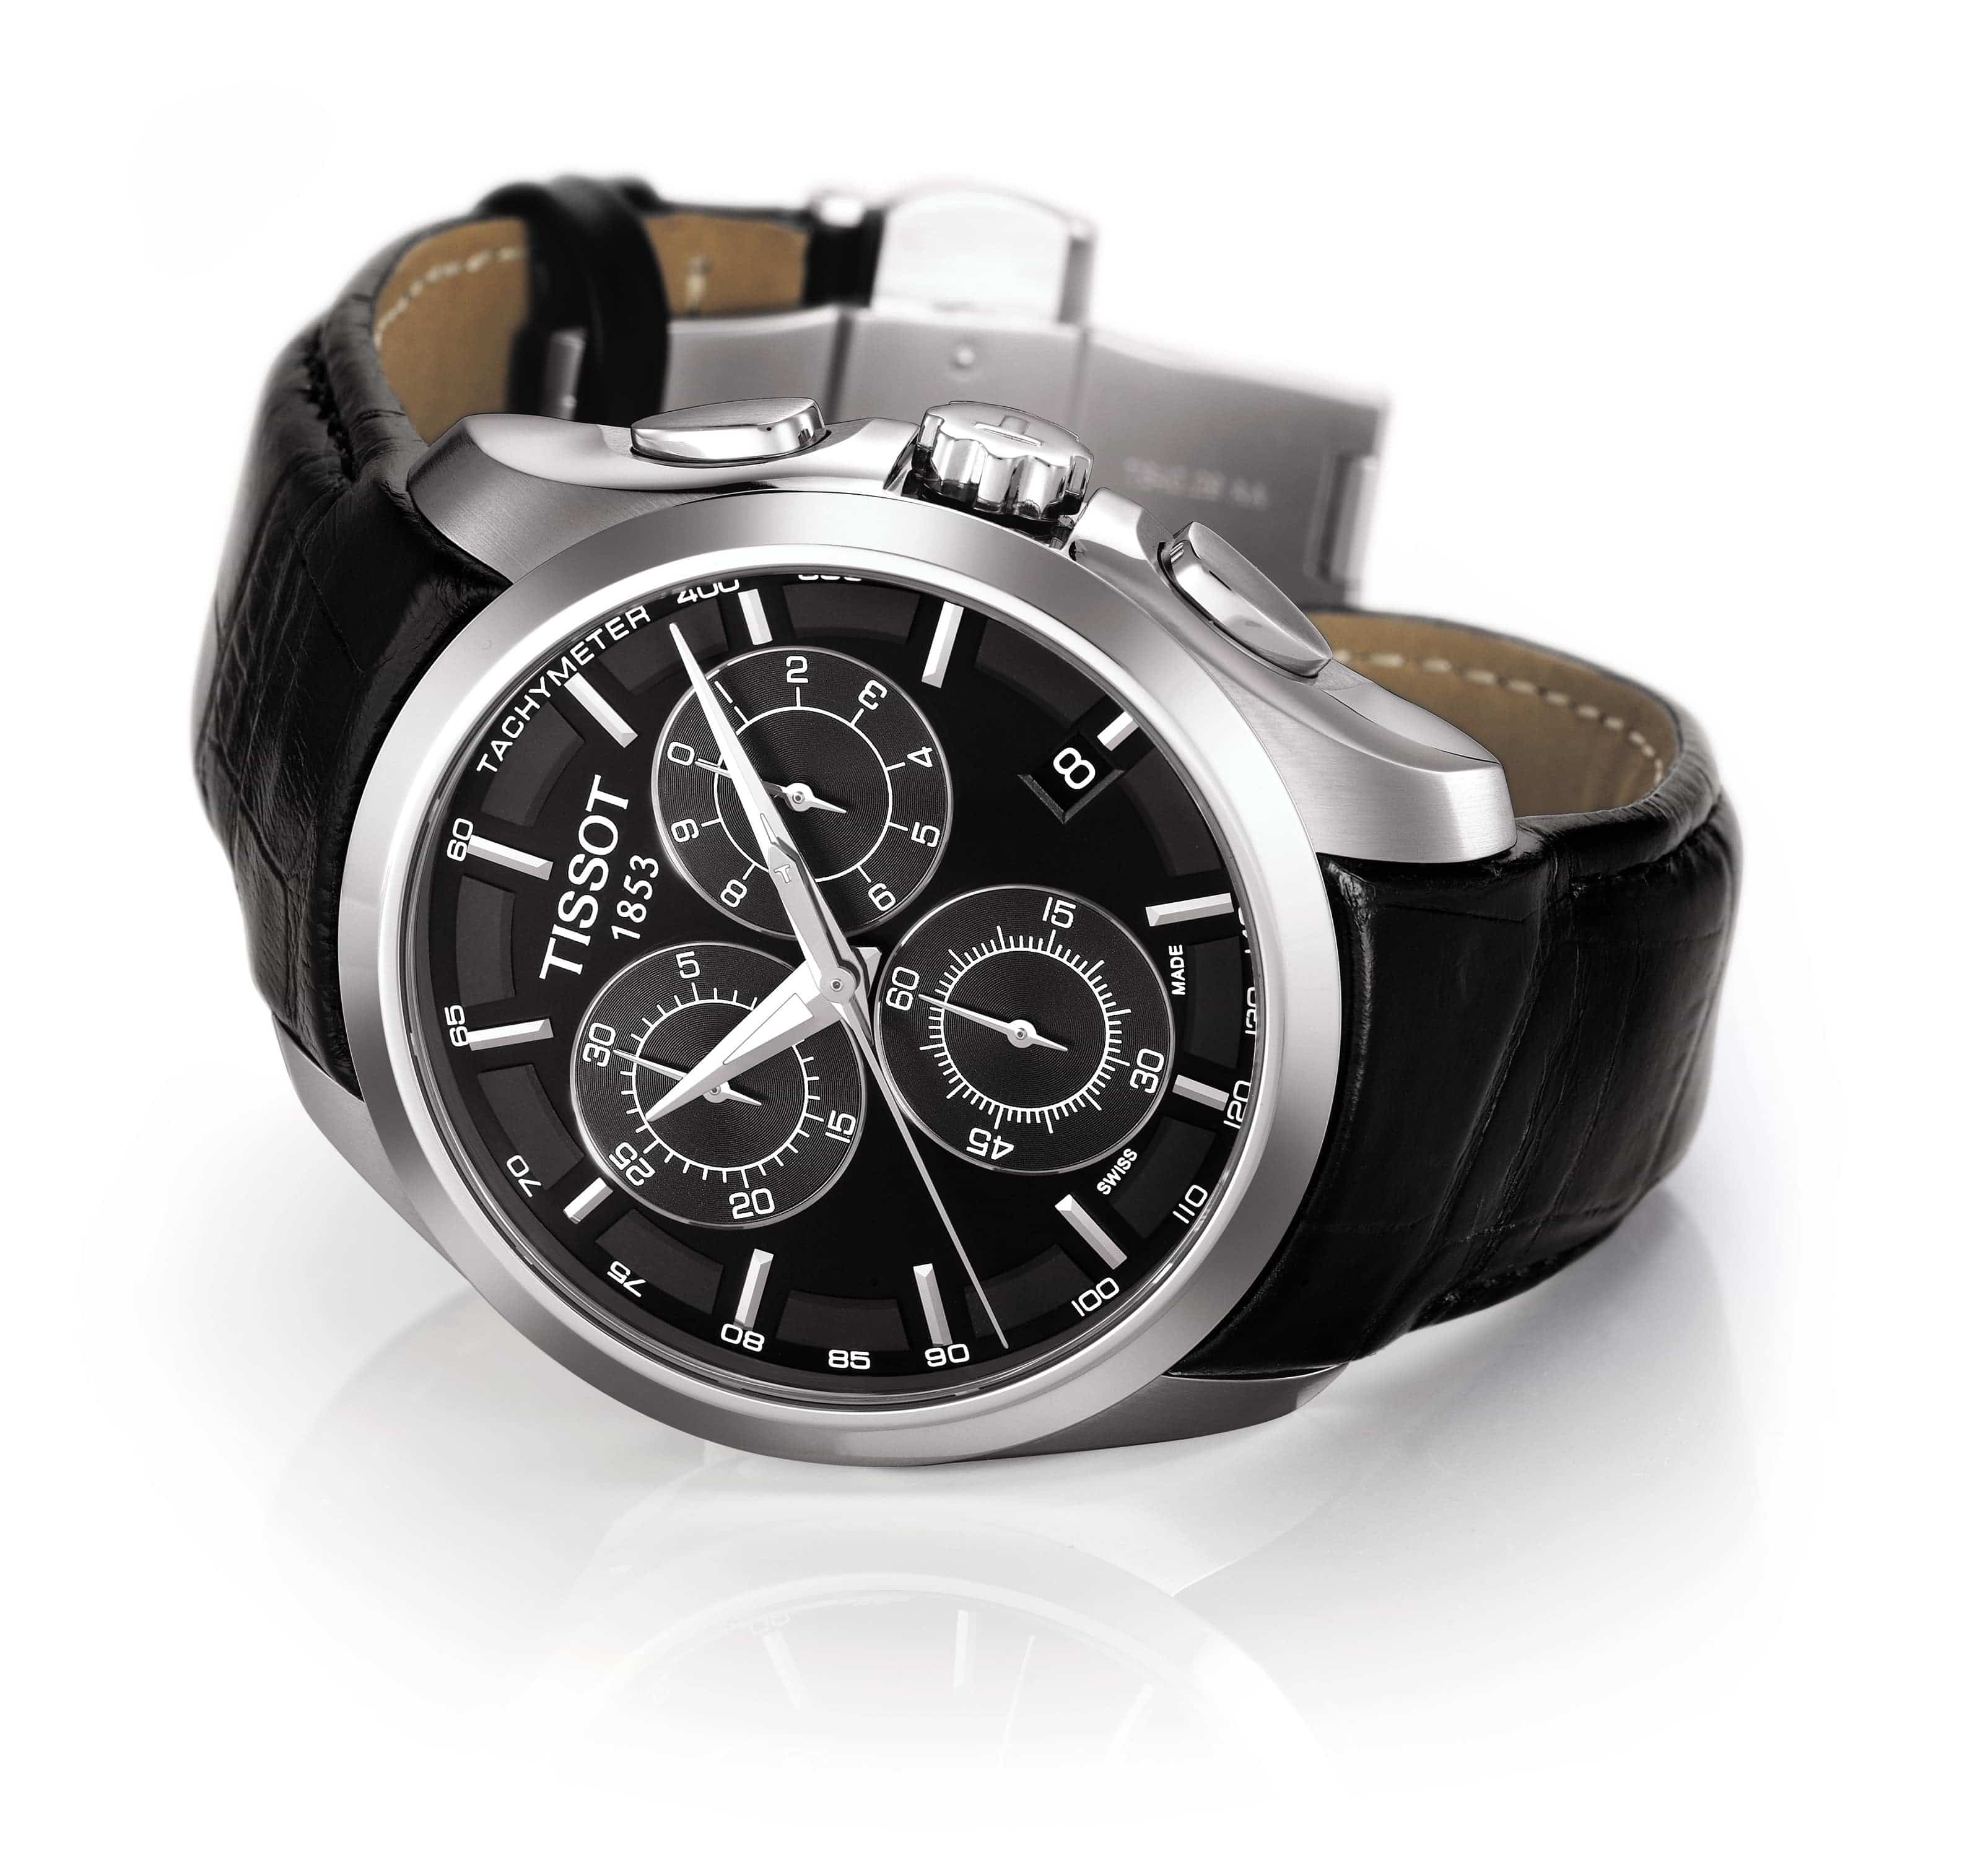 Tissot Couturier Chronograph Quartz Men's Watch T0356171605100 